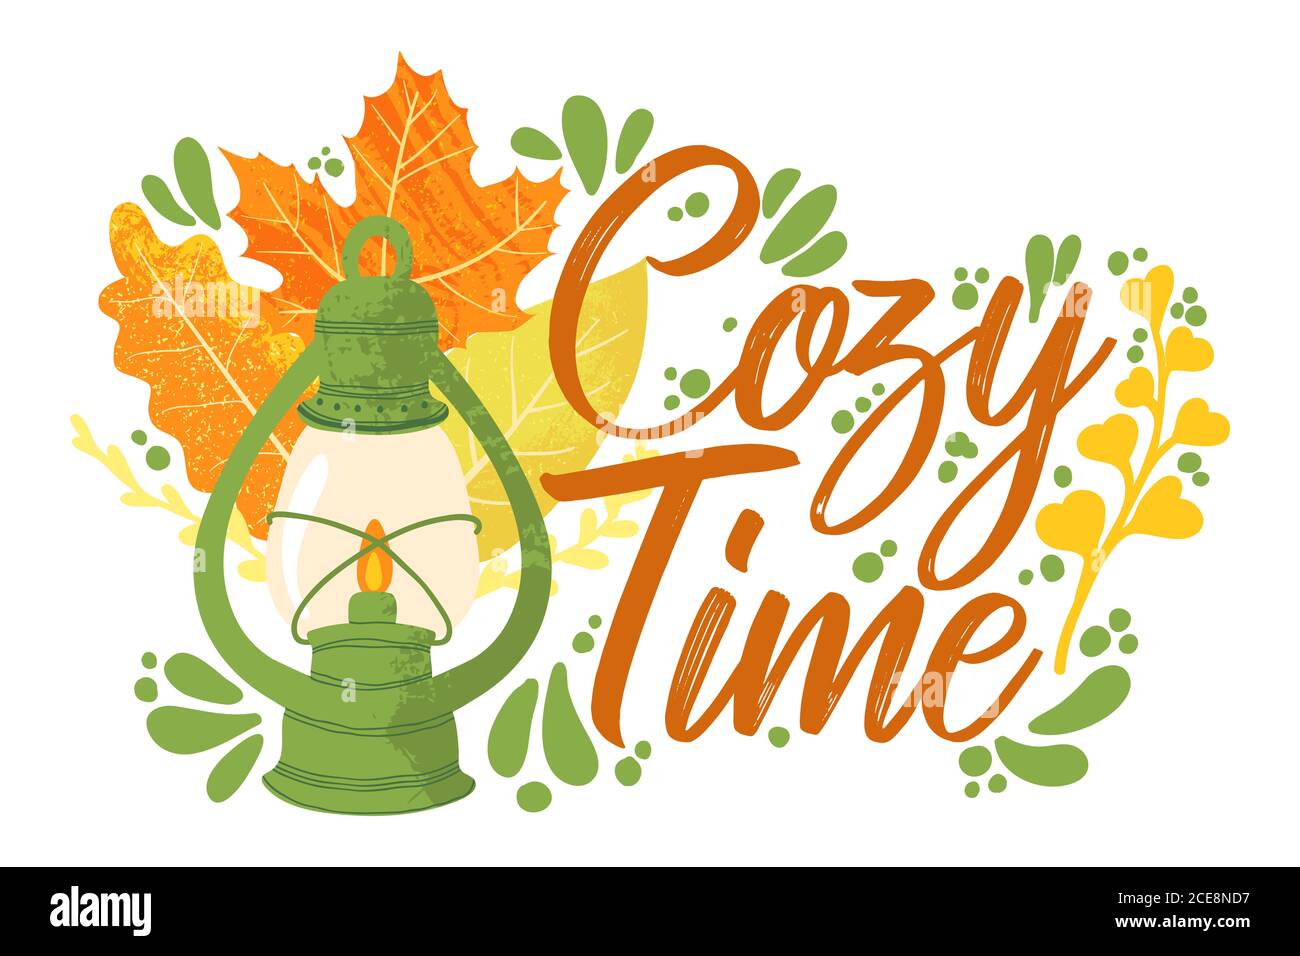 Cosy Time - Herbst Typografie Zitate mit Herbst Elemente. Vektor-Zitate mit Herbstblättern, Beeren und Laterne. Isoliert auf weißem Hintergrund. Stock Vektor